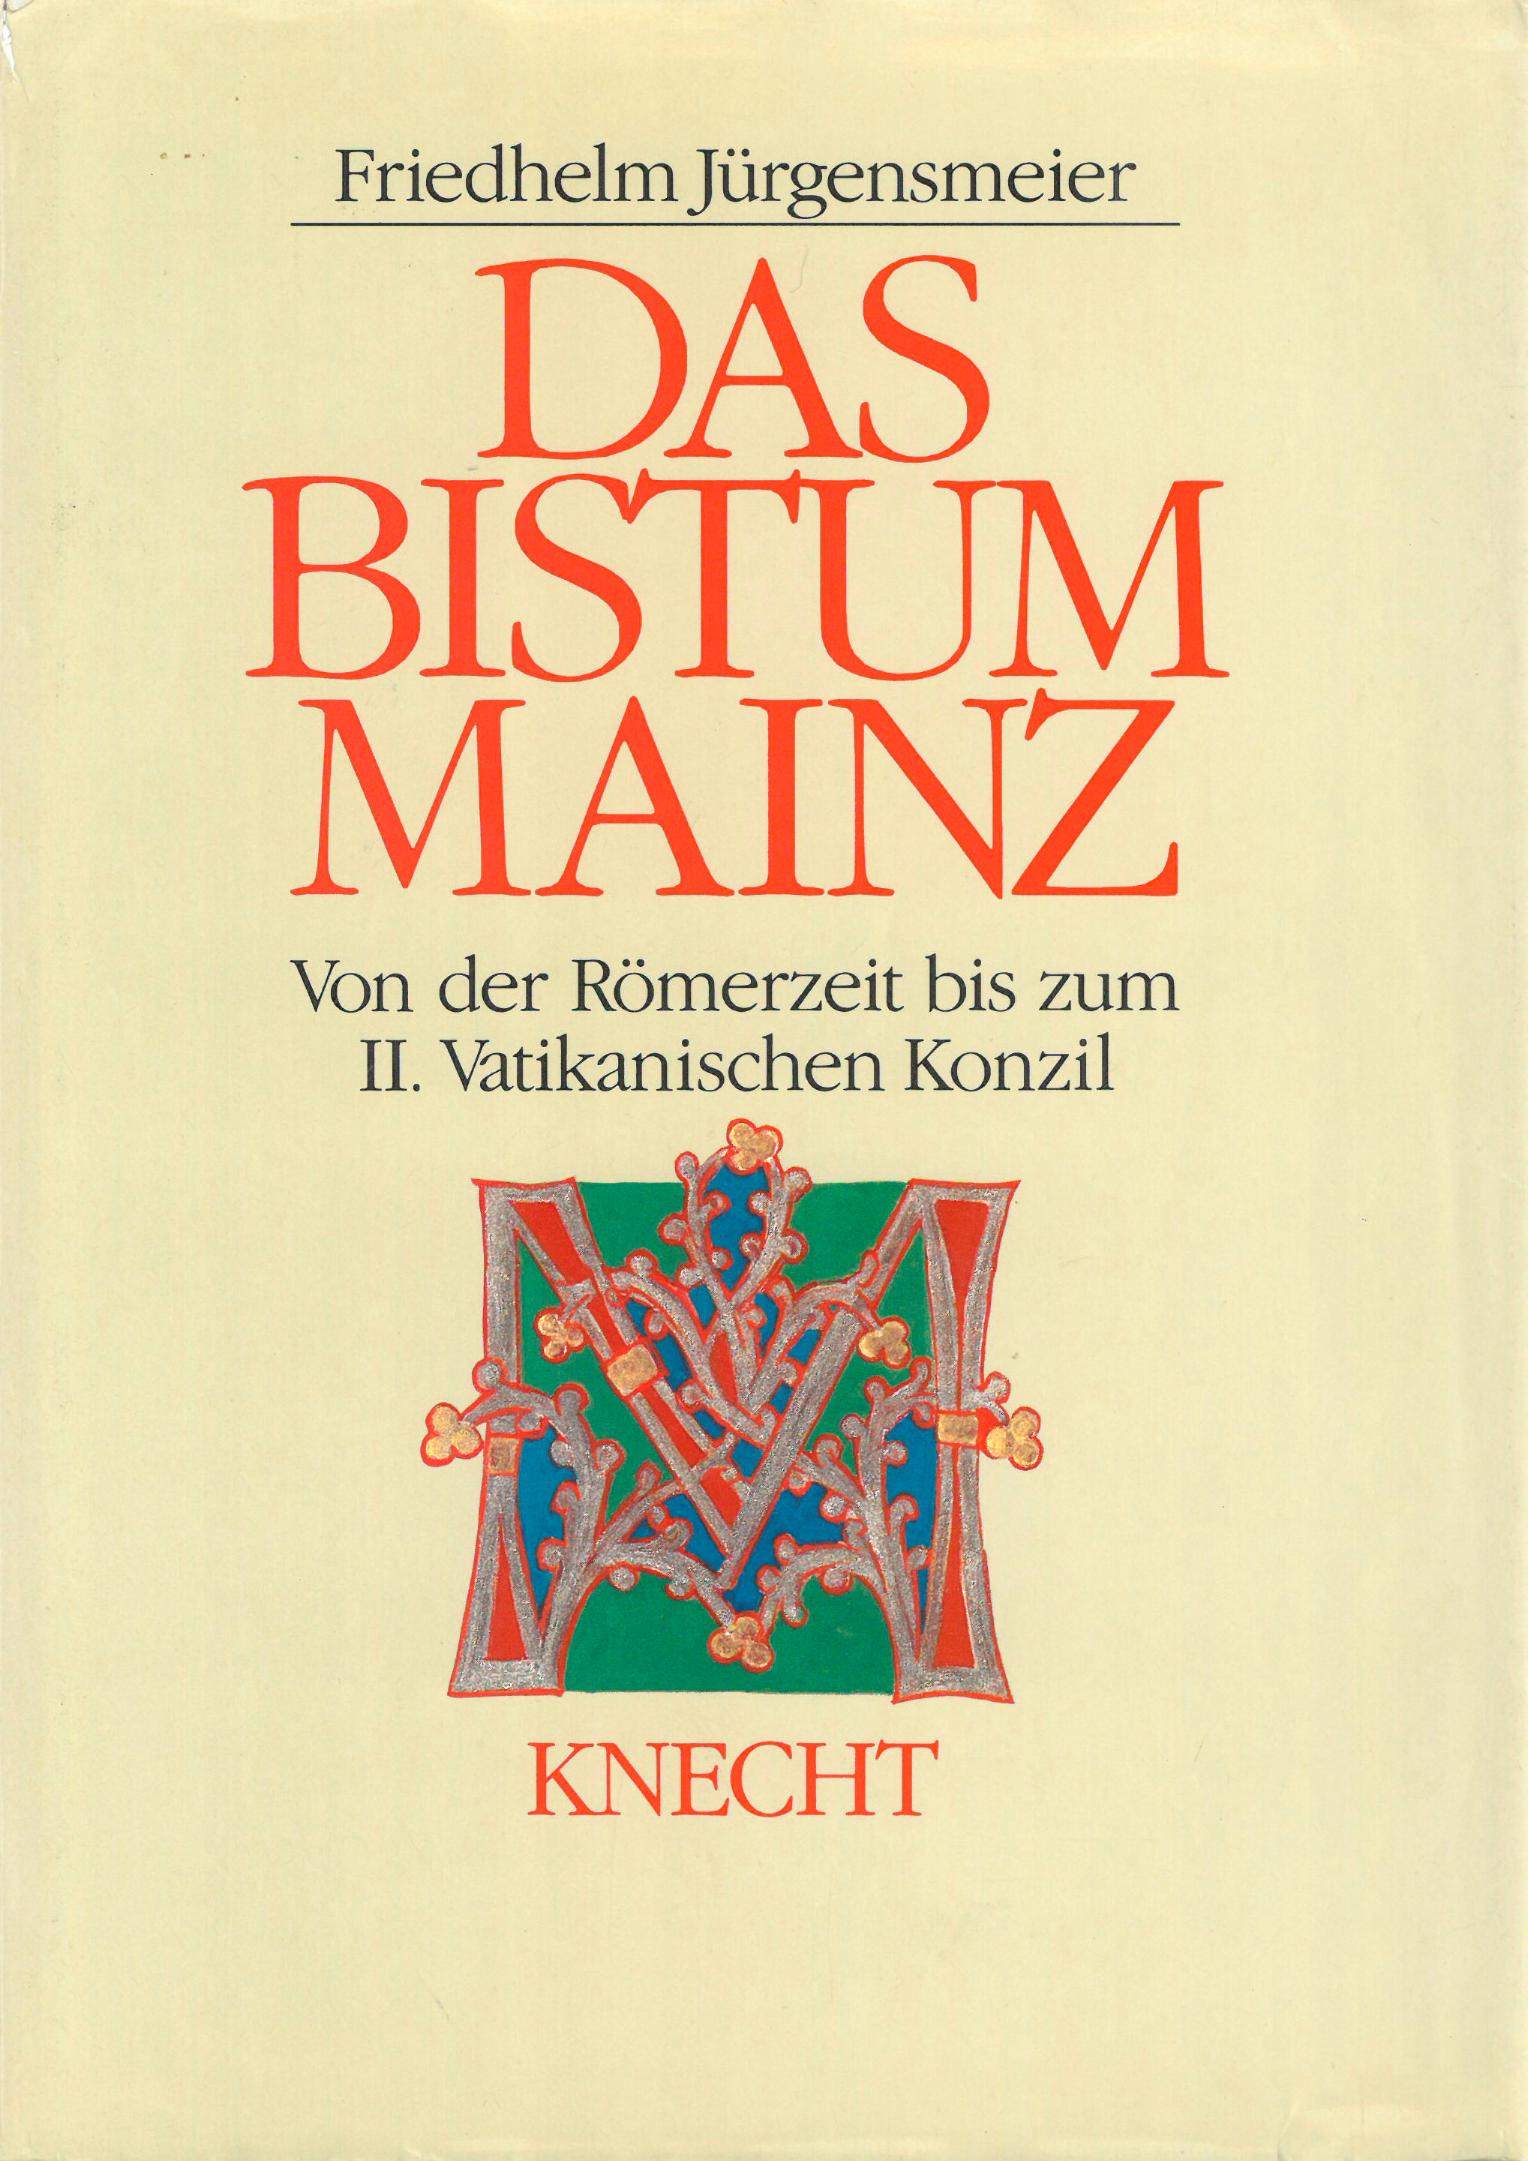 Bistum Mainz (c) Knecht / IMKG